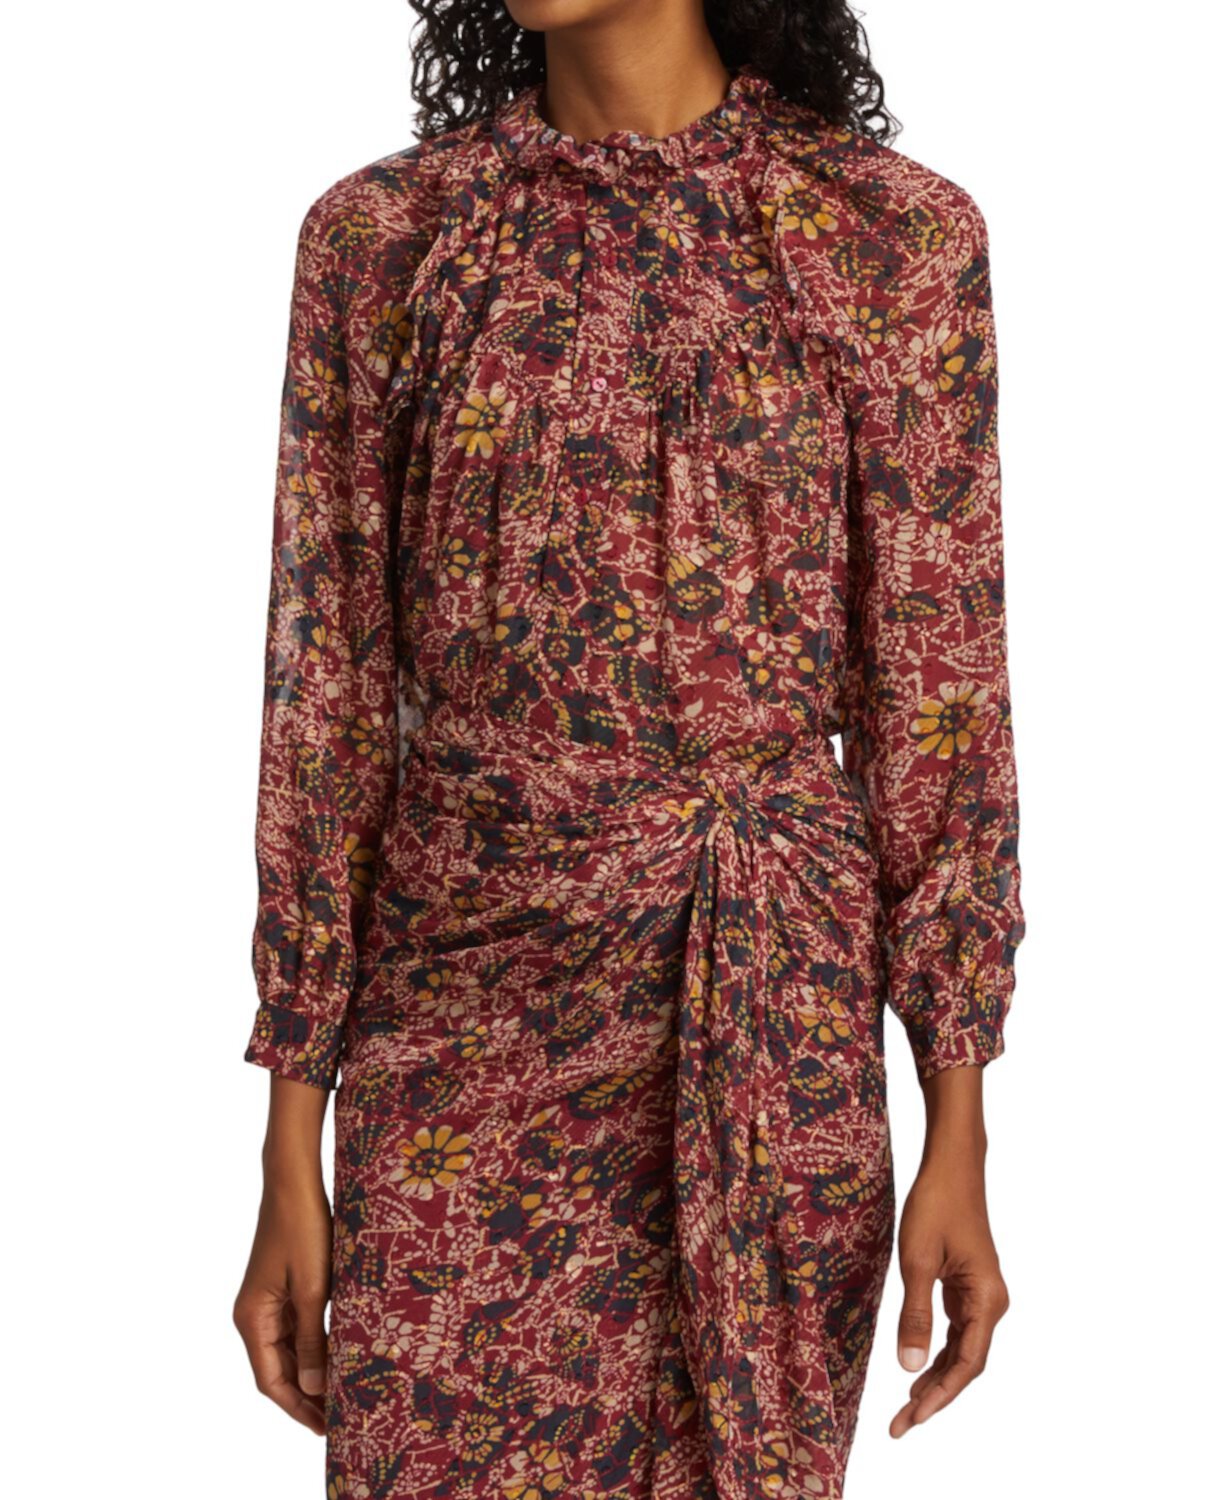 Прозрачная блузка с цветочным принтом Gaelle Ba&sh